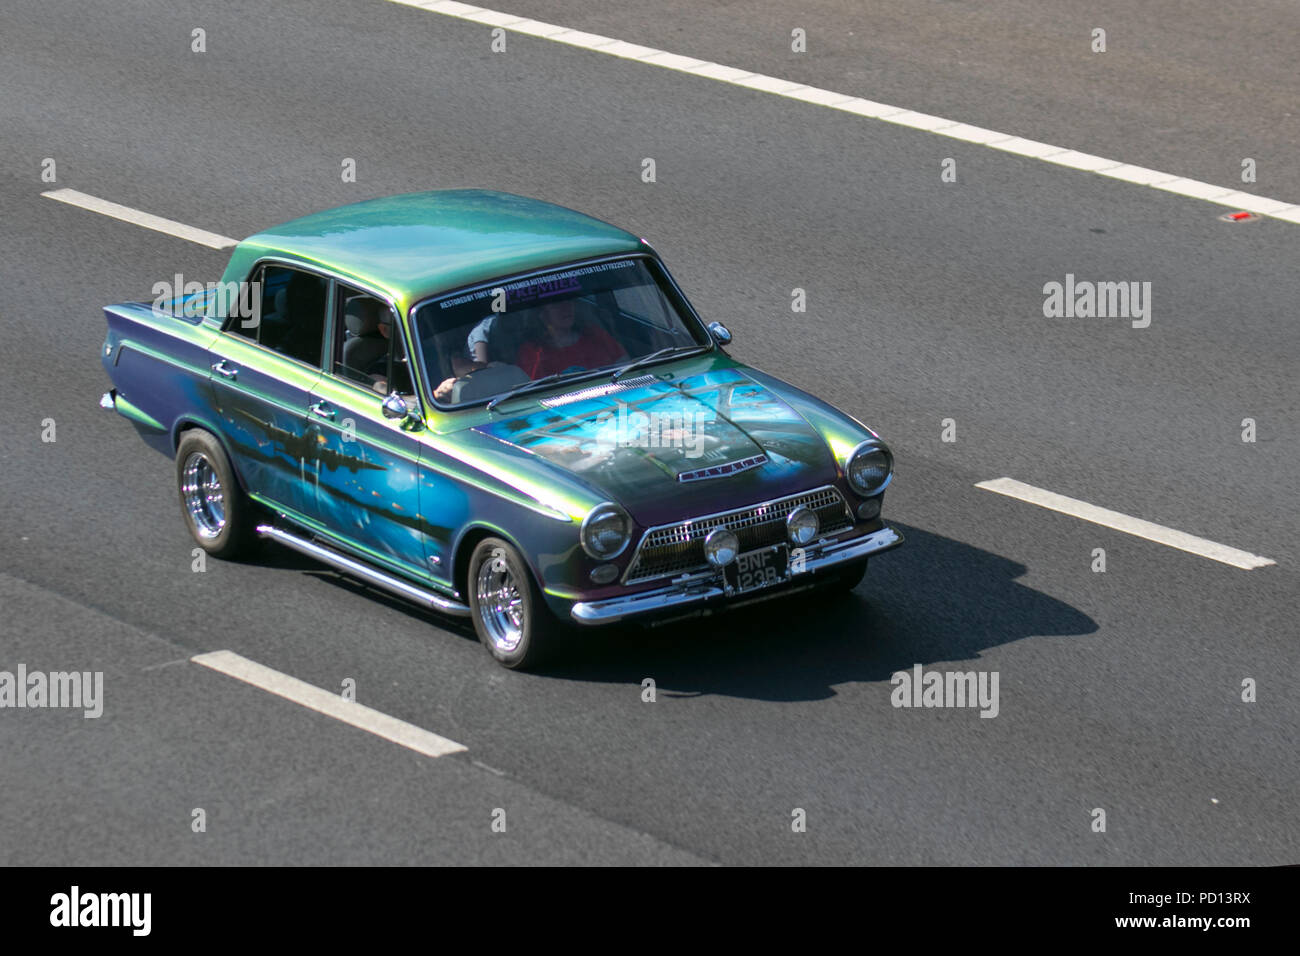 1964 60s modifié bleu Savage Ford Cortina Super Mk1 ; UK trafic automobile, transport, véhicules de collection voitures berline, sur l'autoroute M55 à 3 voies, Blackpool, Royaume-Uni Banque D'Images